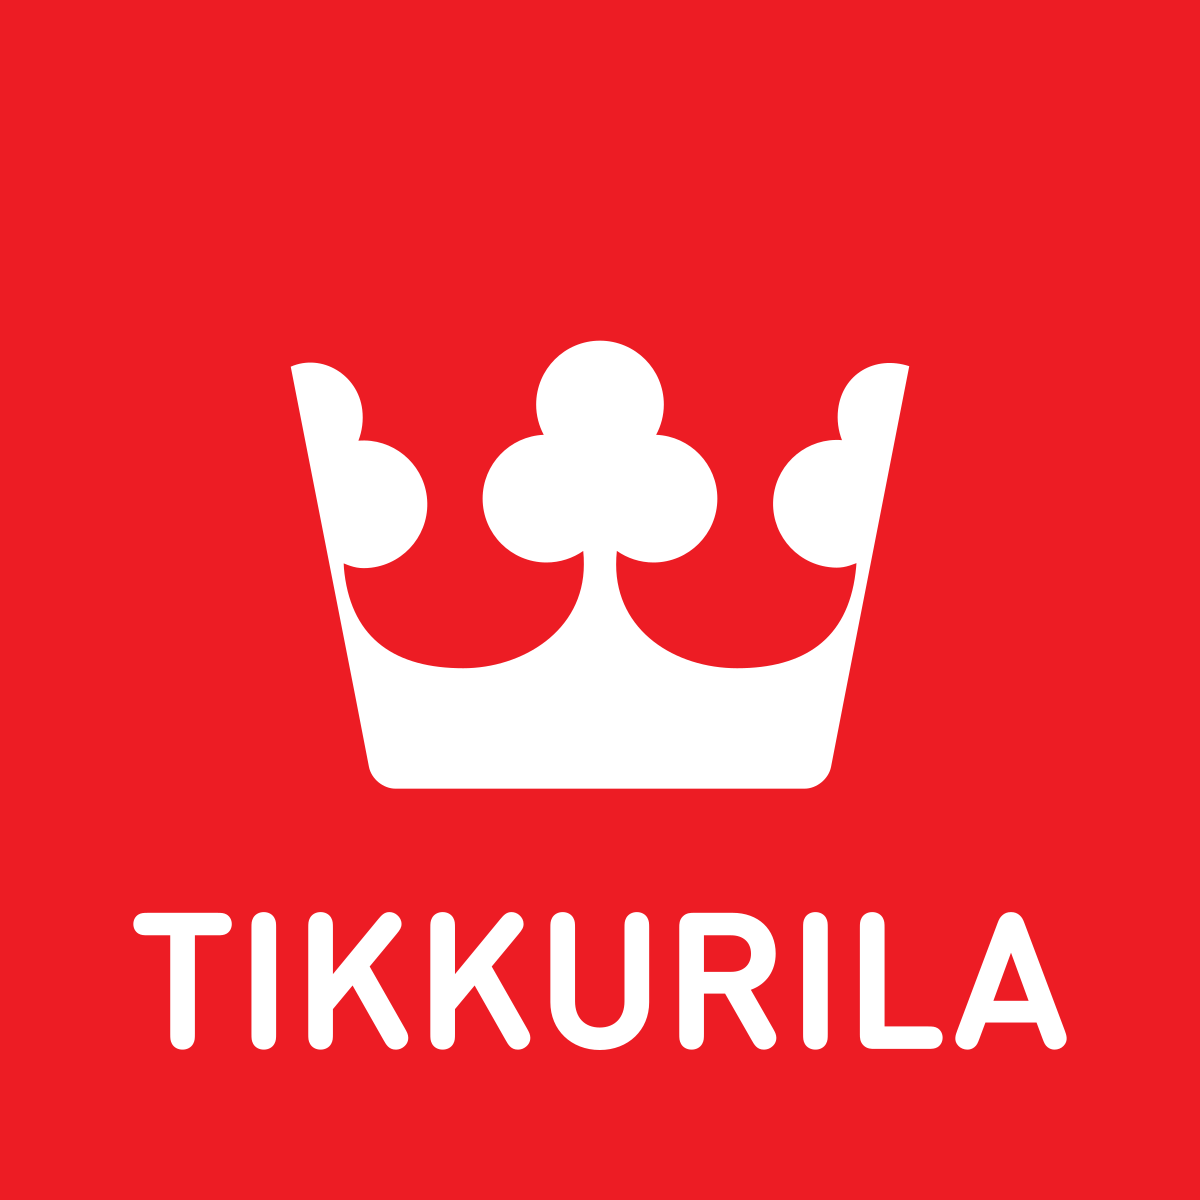 Tikkurila - fínsky výrobca farieb, lakov, olejov a lazúr na drevo, kov, steny a ďalšie materiály.